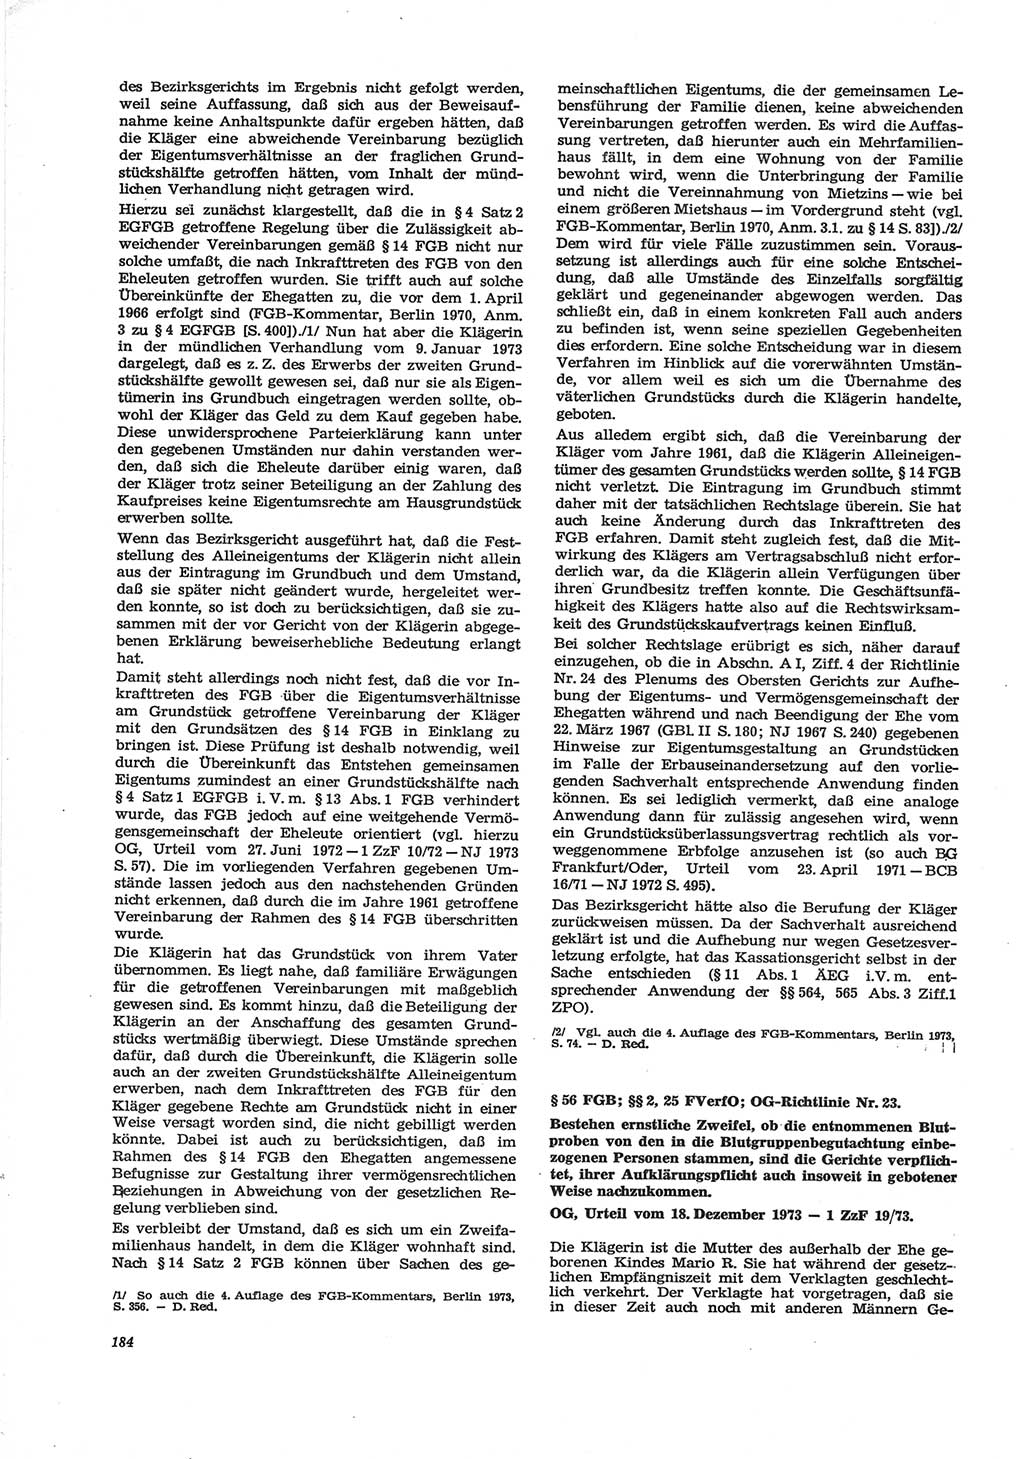 Neue Justiz (NJ), Zeitschrift für Recht und Rechtswissenschaft [Deutsche Demokratische Republik (DDR)], 28. Jahrgang 1974, Seite 184 (NJ DDR 1974, S. 184)